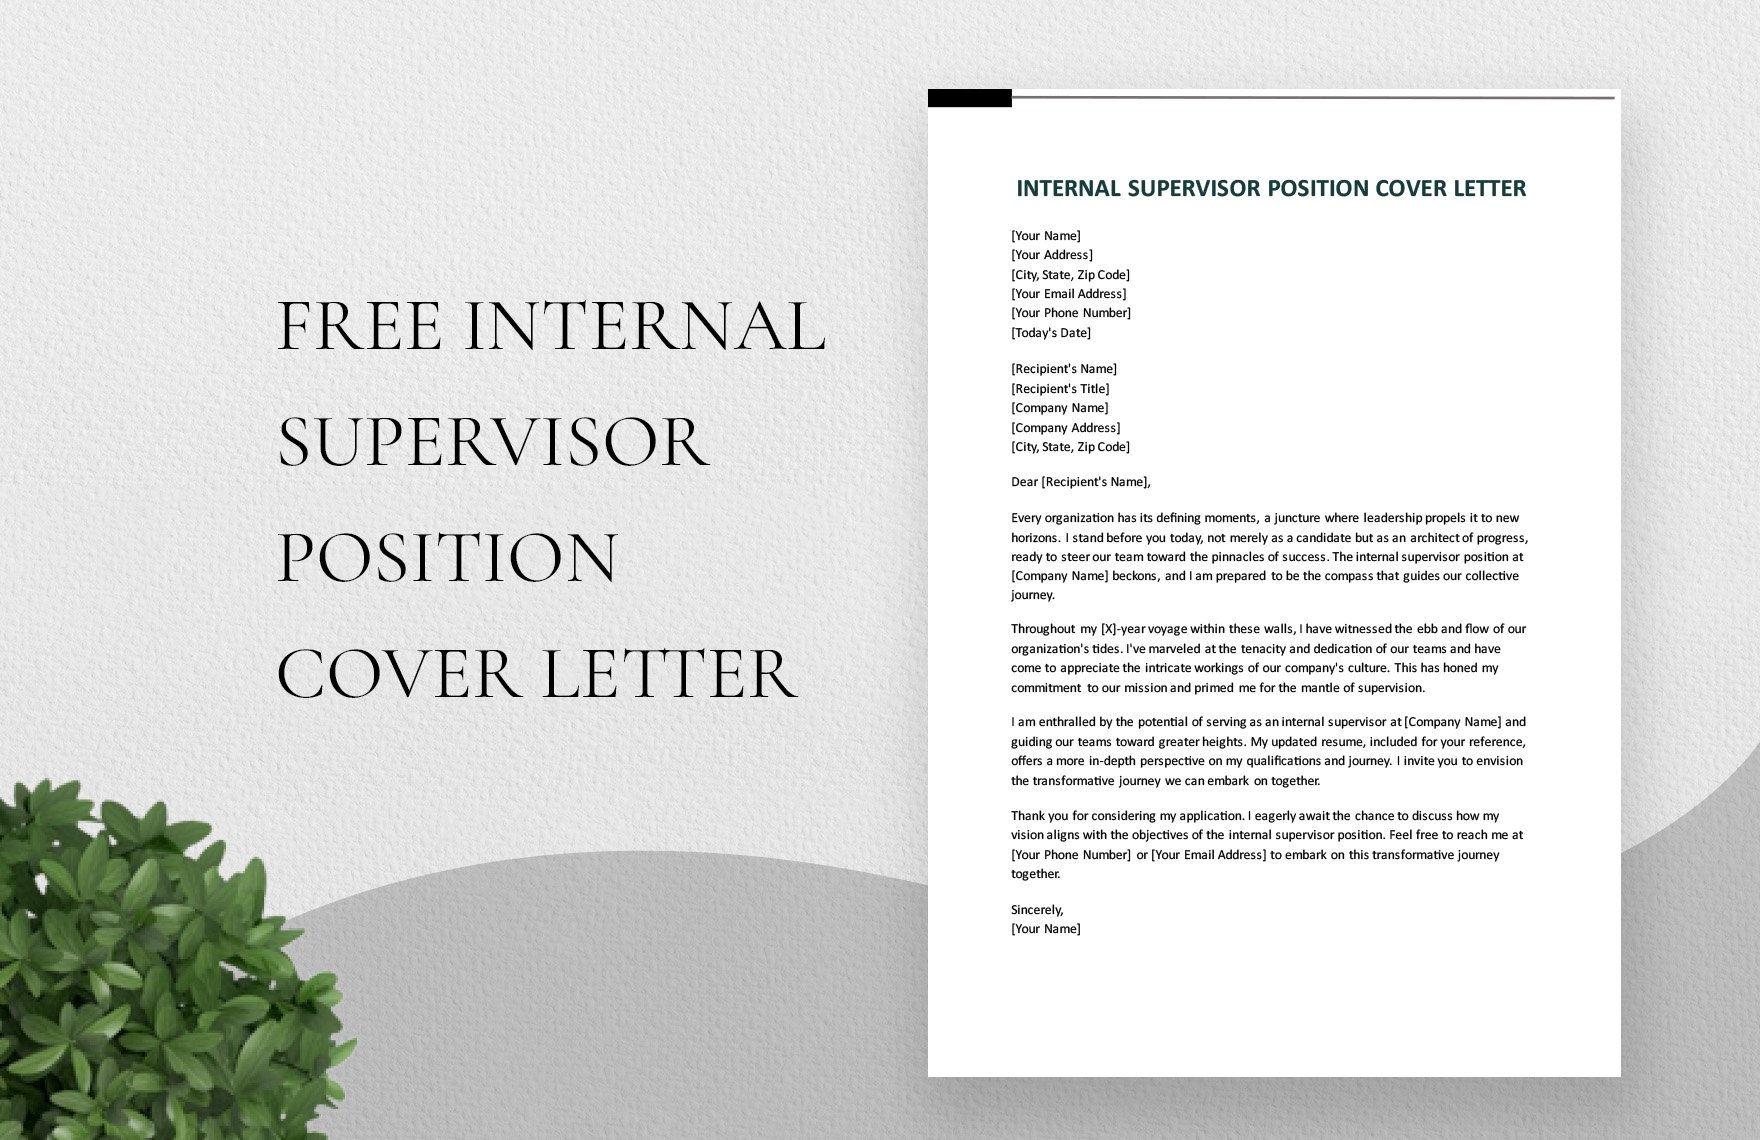 Internal Supervisor Position Cover Letter